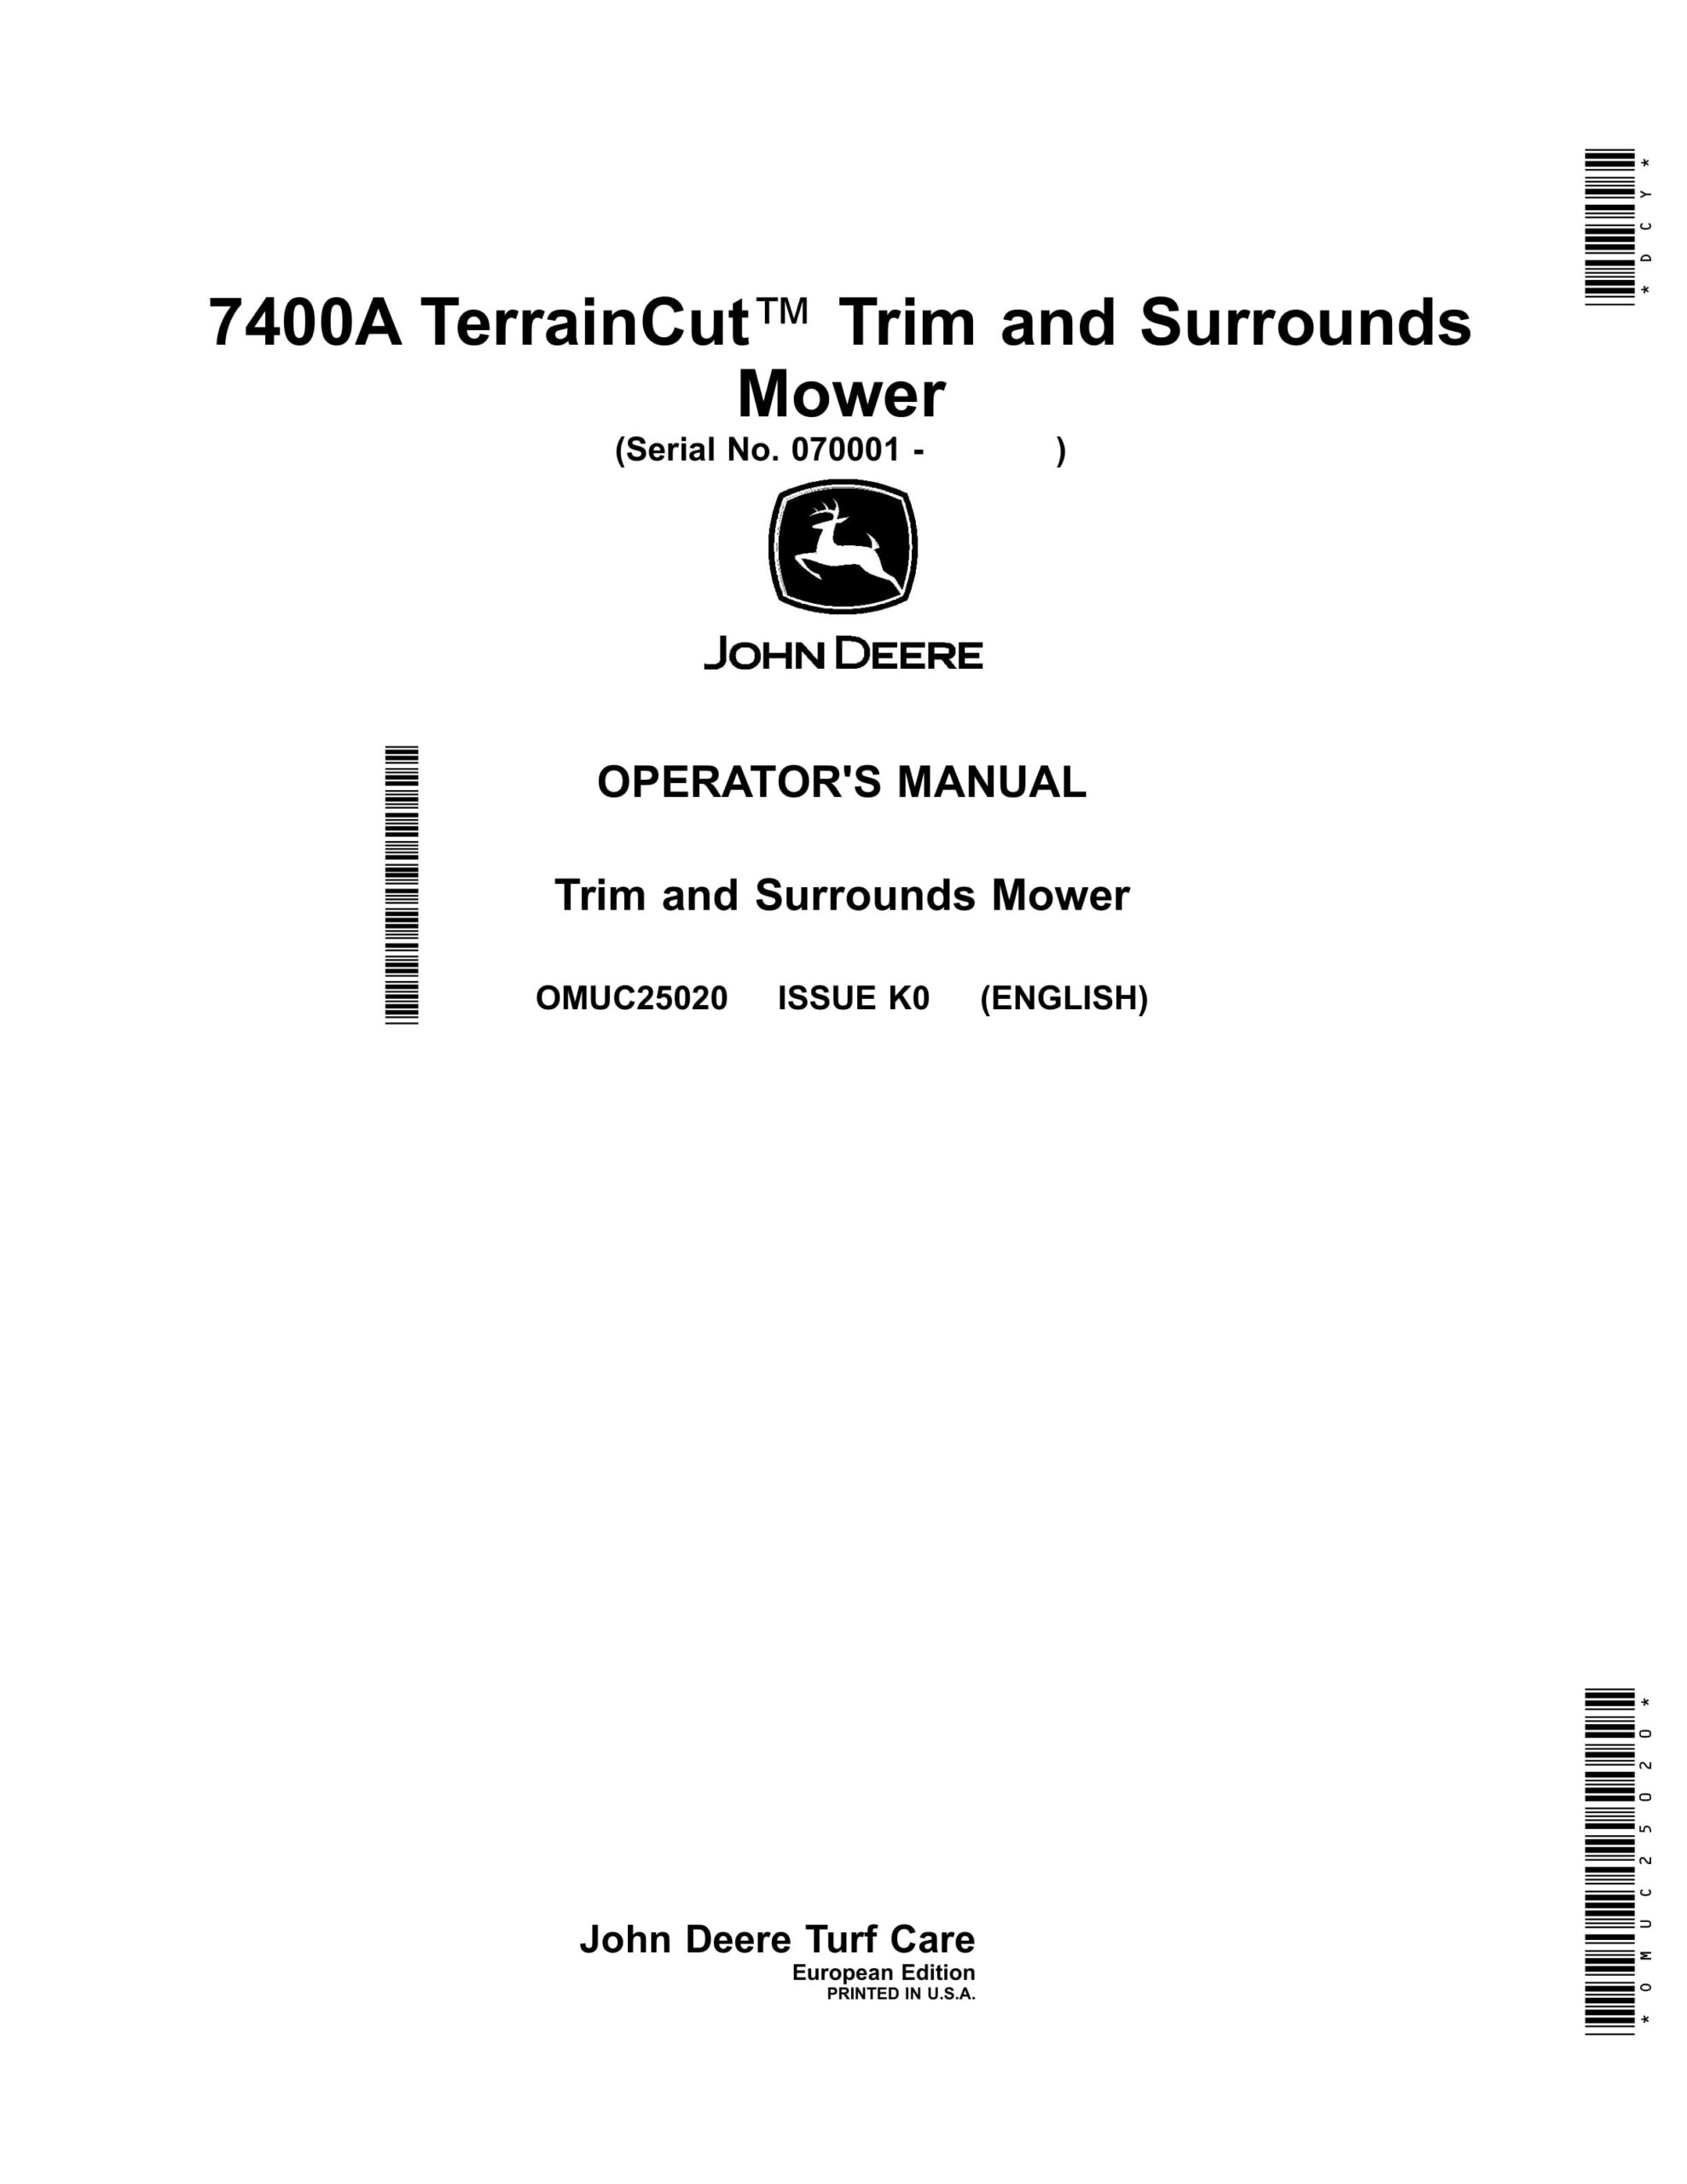 John Deere 7400A TerrainCut Trim and Surrounds Mower Operator Manual OMUC25020-1